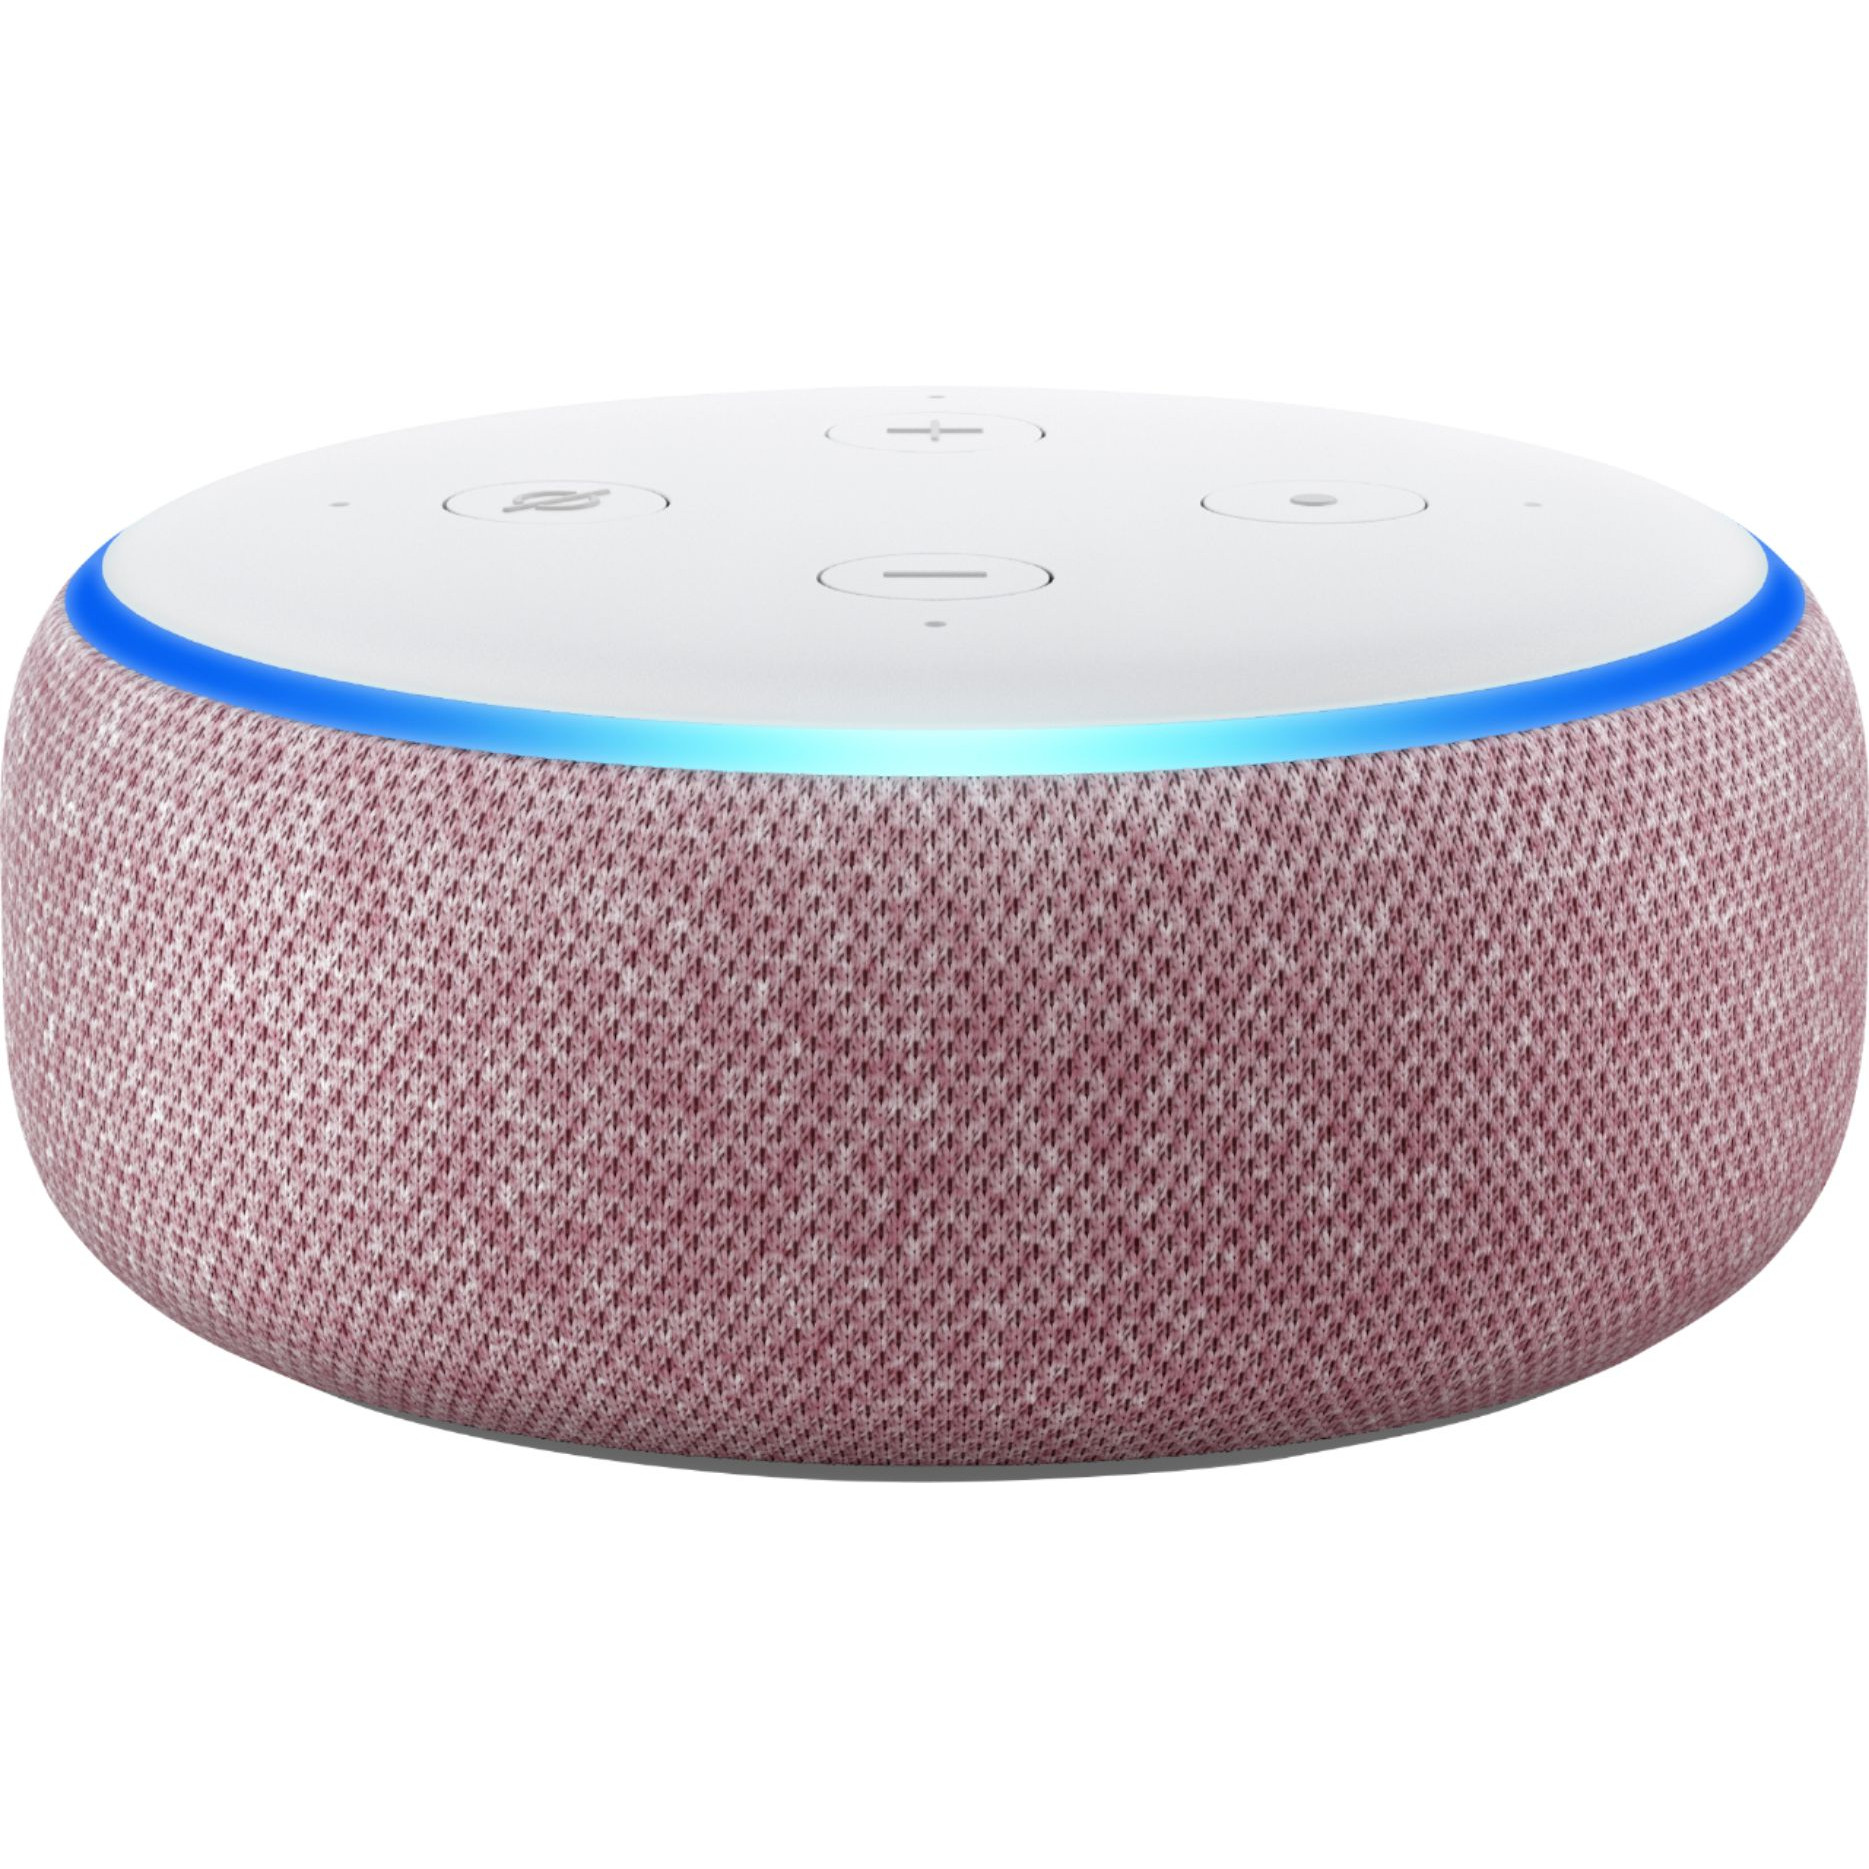 Loa Bluetooth Thông Minh Amazon Echo Dot 3 Trợ Lý Ảo Alexa Đỏ -Hàng nhập khẩu